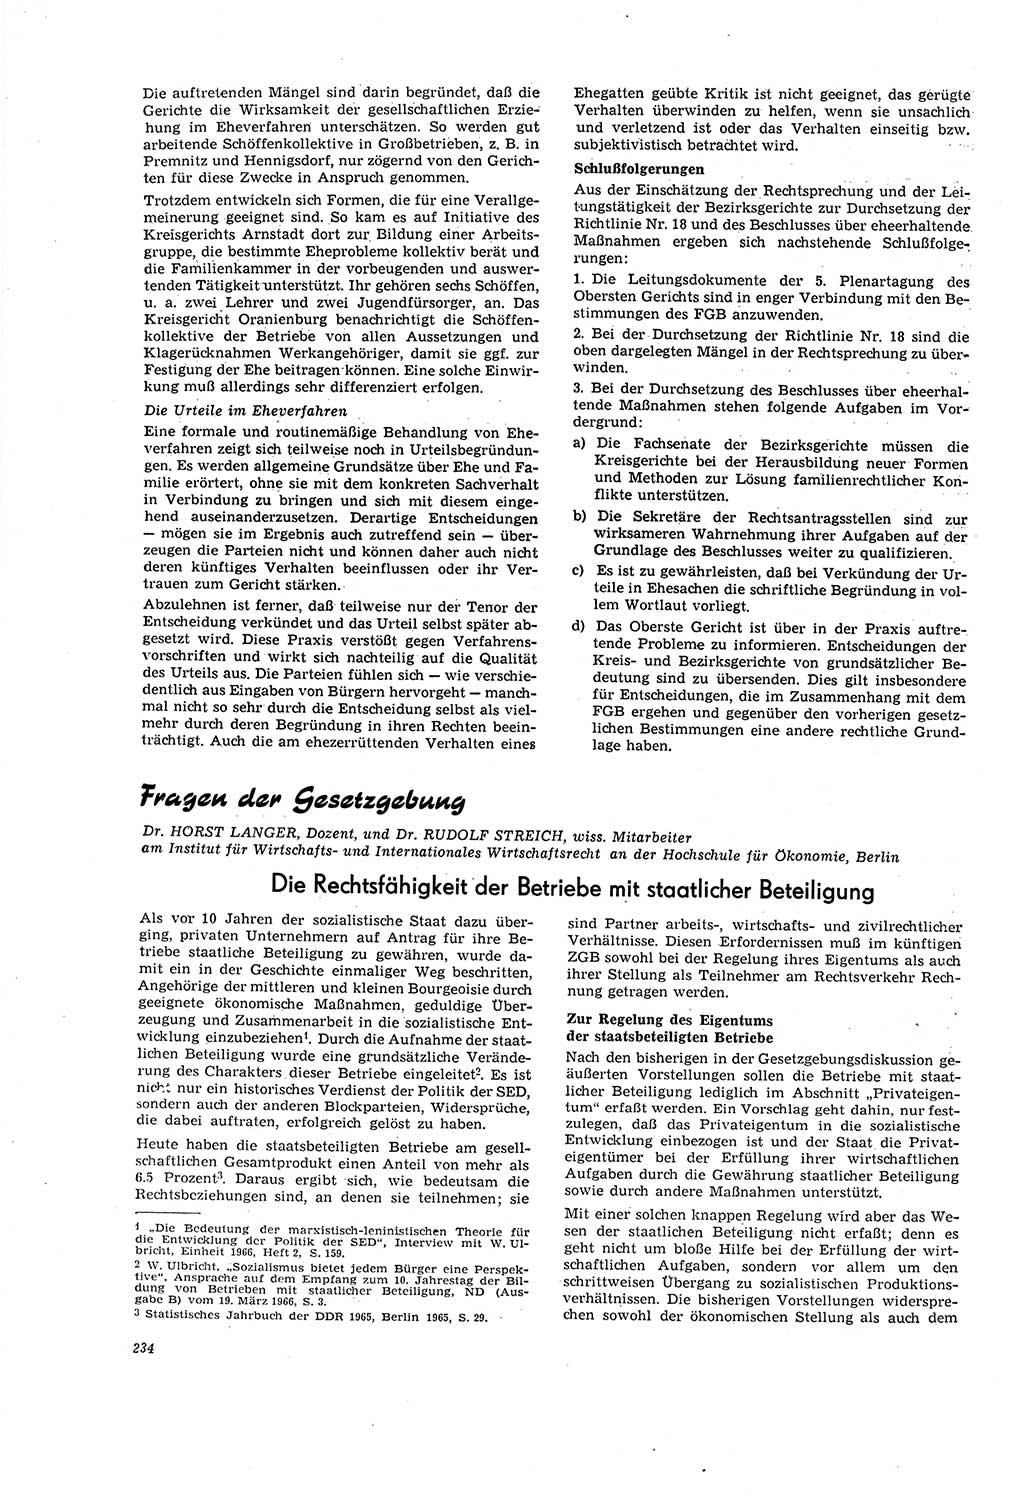 Neue Justiz (NJ), Zeitschrift für Recht und Rechtswissenschaft [Deutsche Demokratische Republik (DDR)], 20. Jahrgang 1966, Seite 234 (NJ DDR 1966, S. 234)